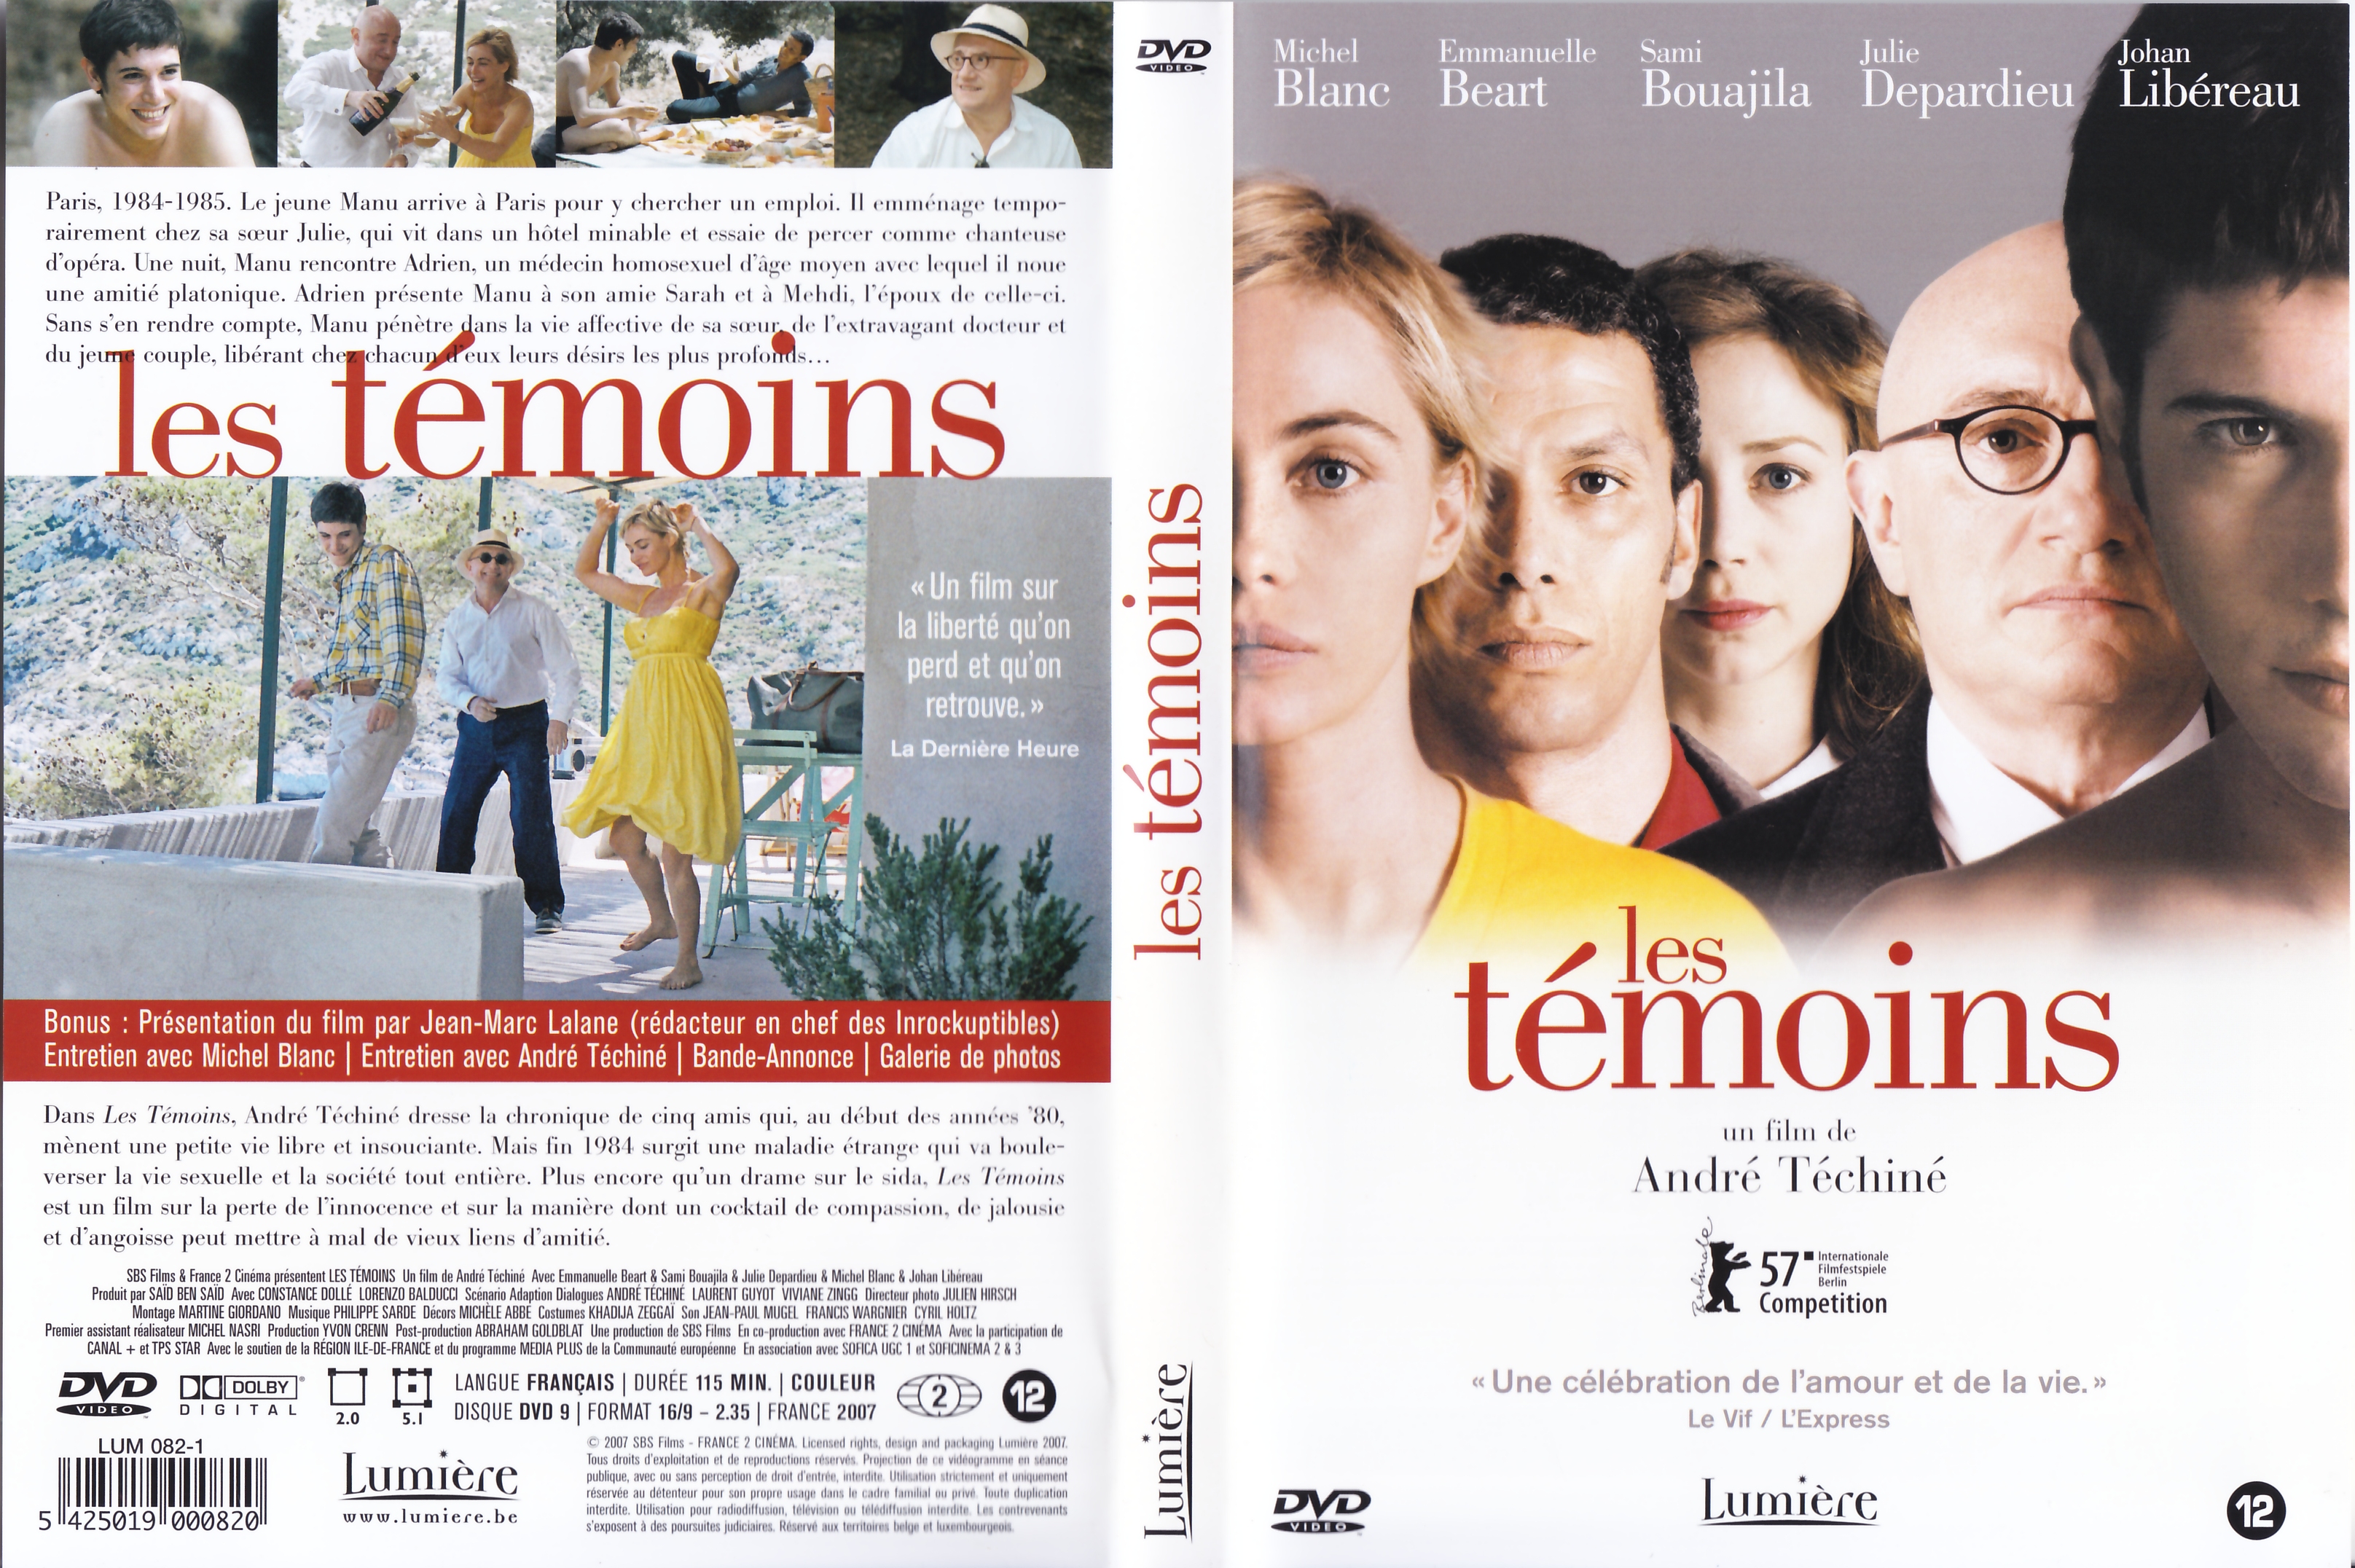 Jaquette DVD Les tmoins (Andr Tchin) v3